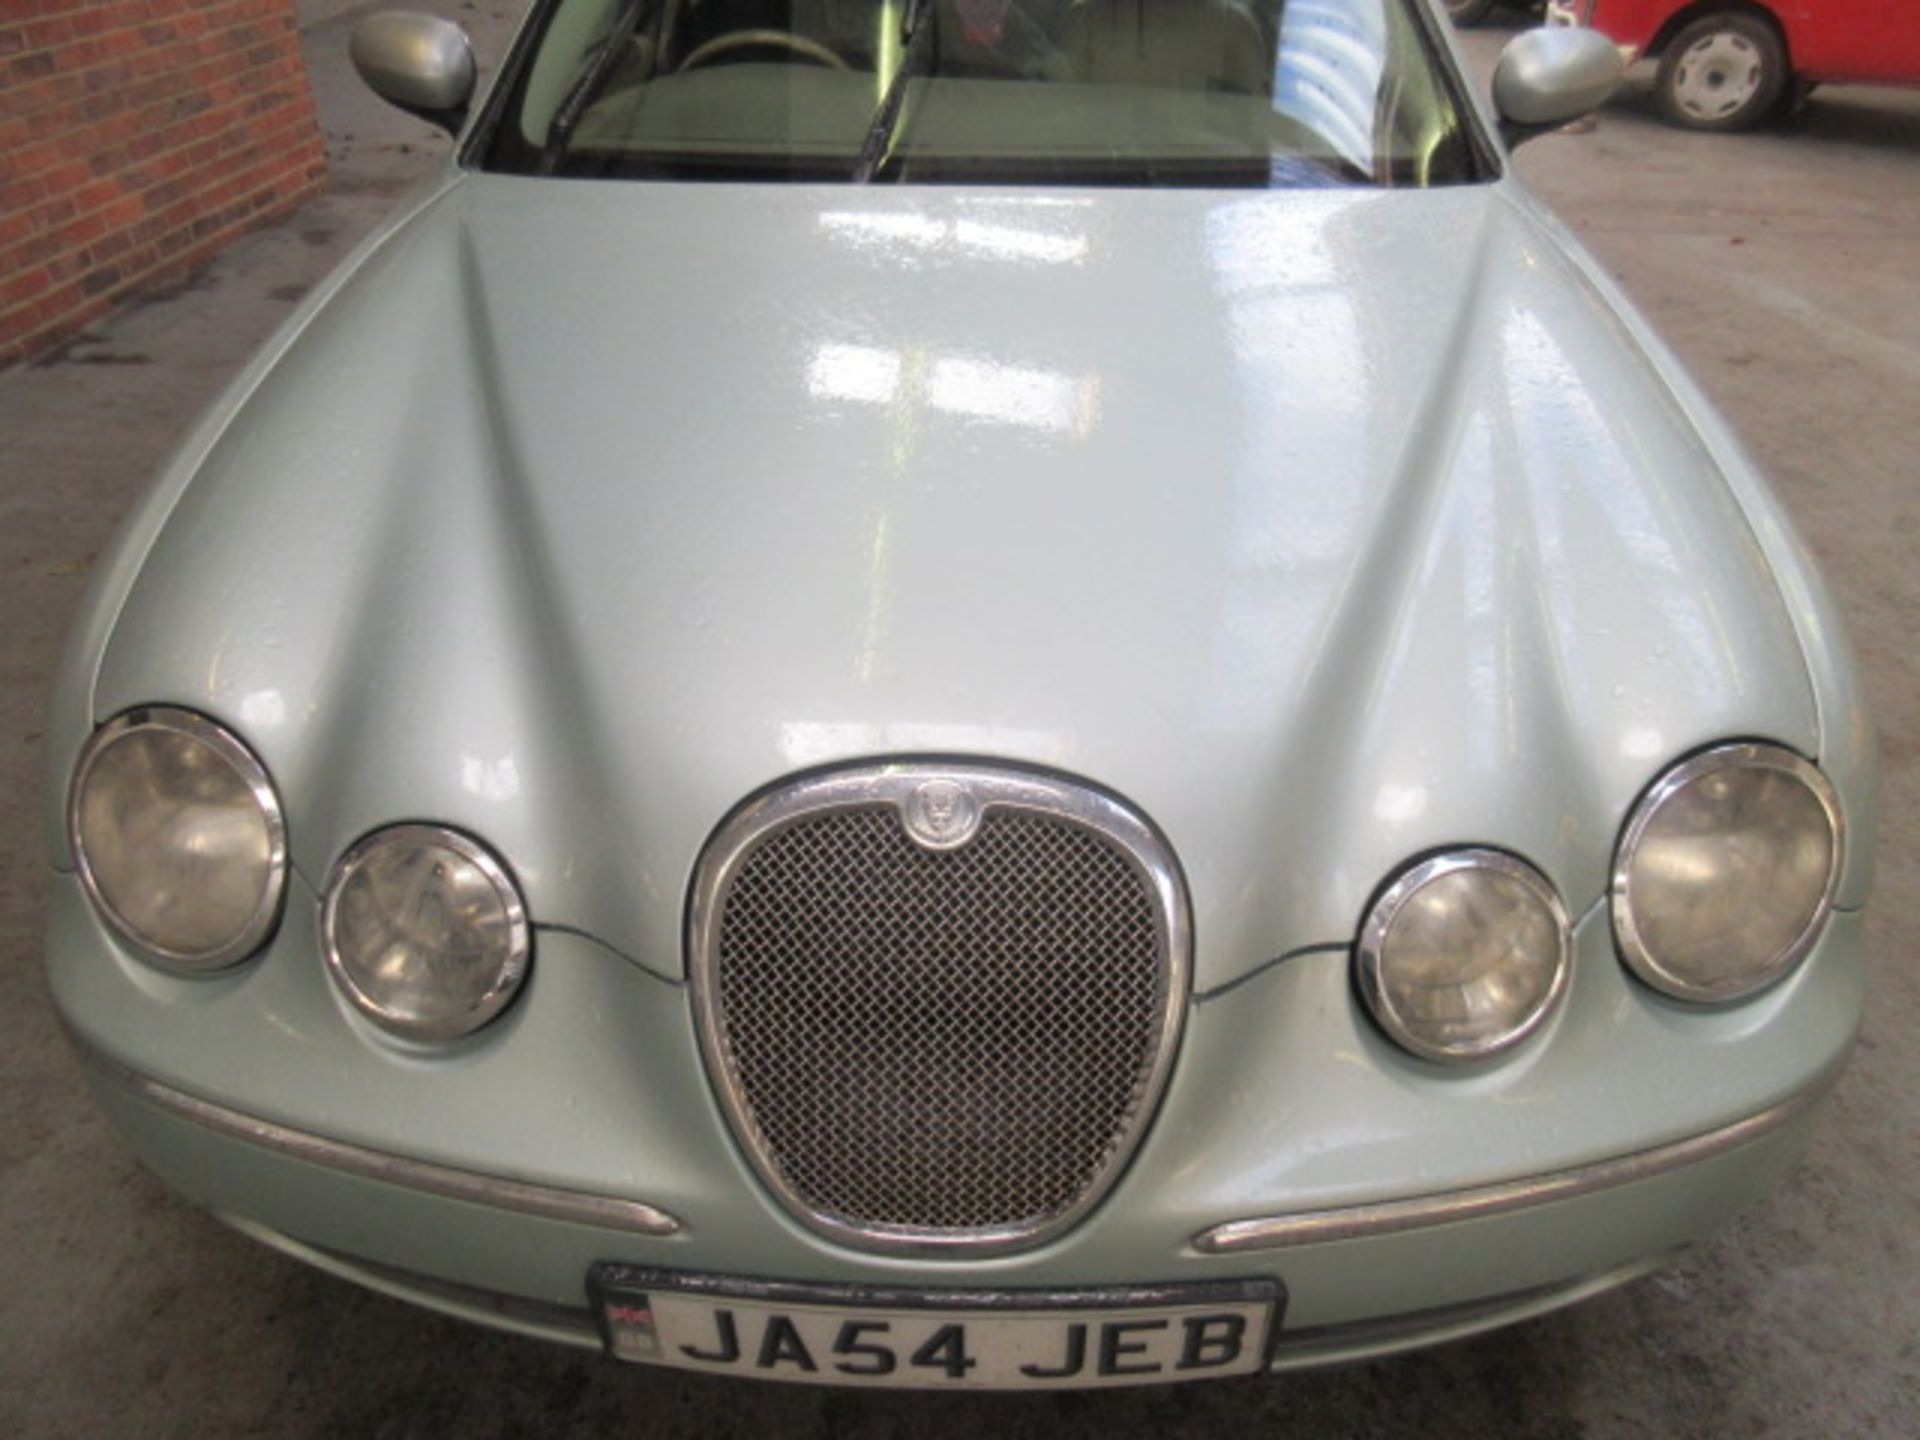 54 05 Jaguar S Type V6 SE Auto - Image 2 of 6